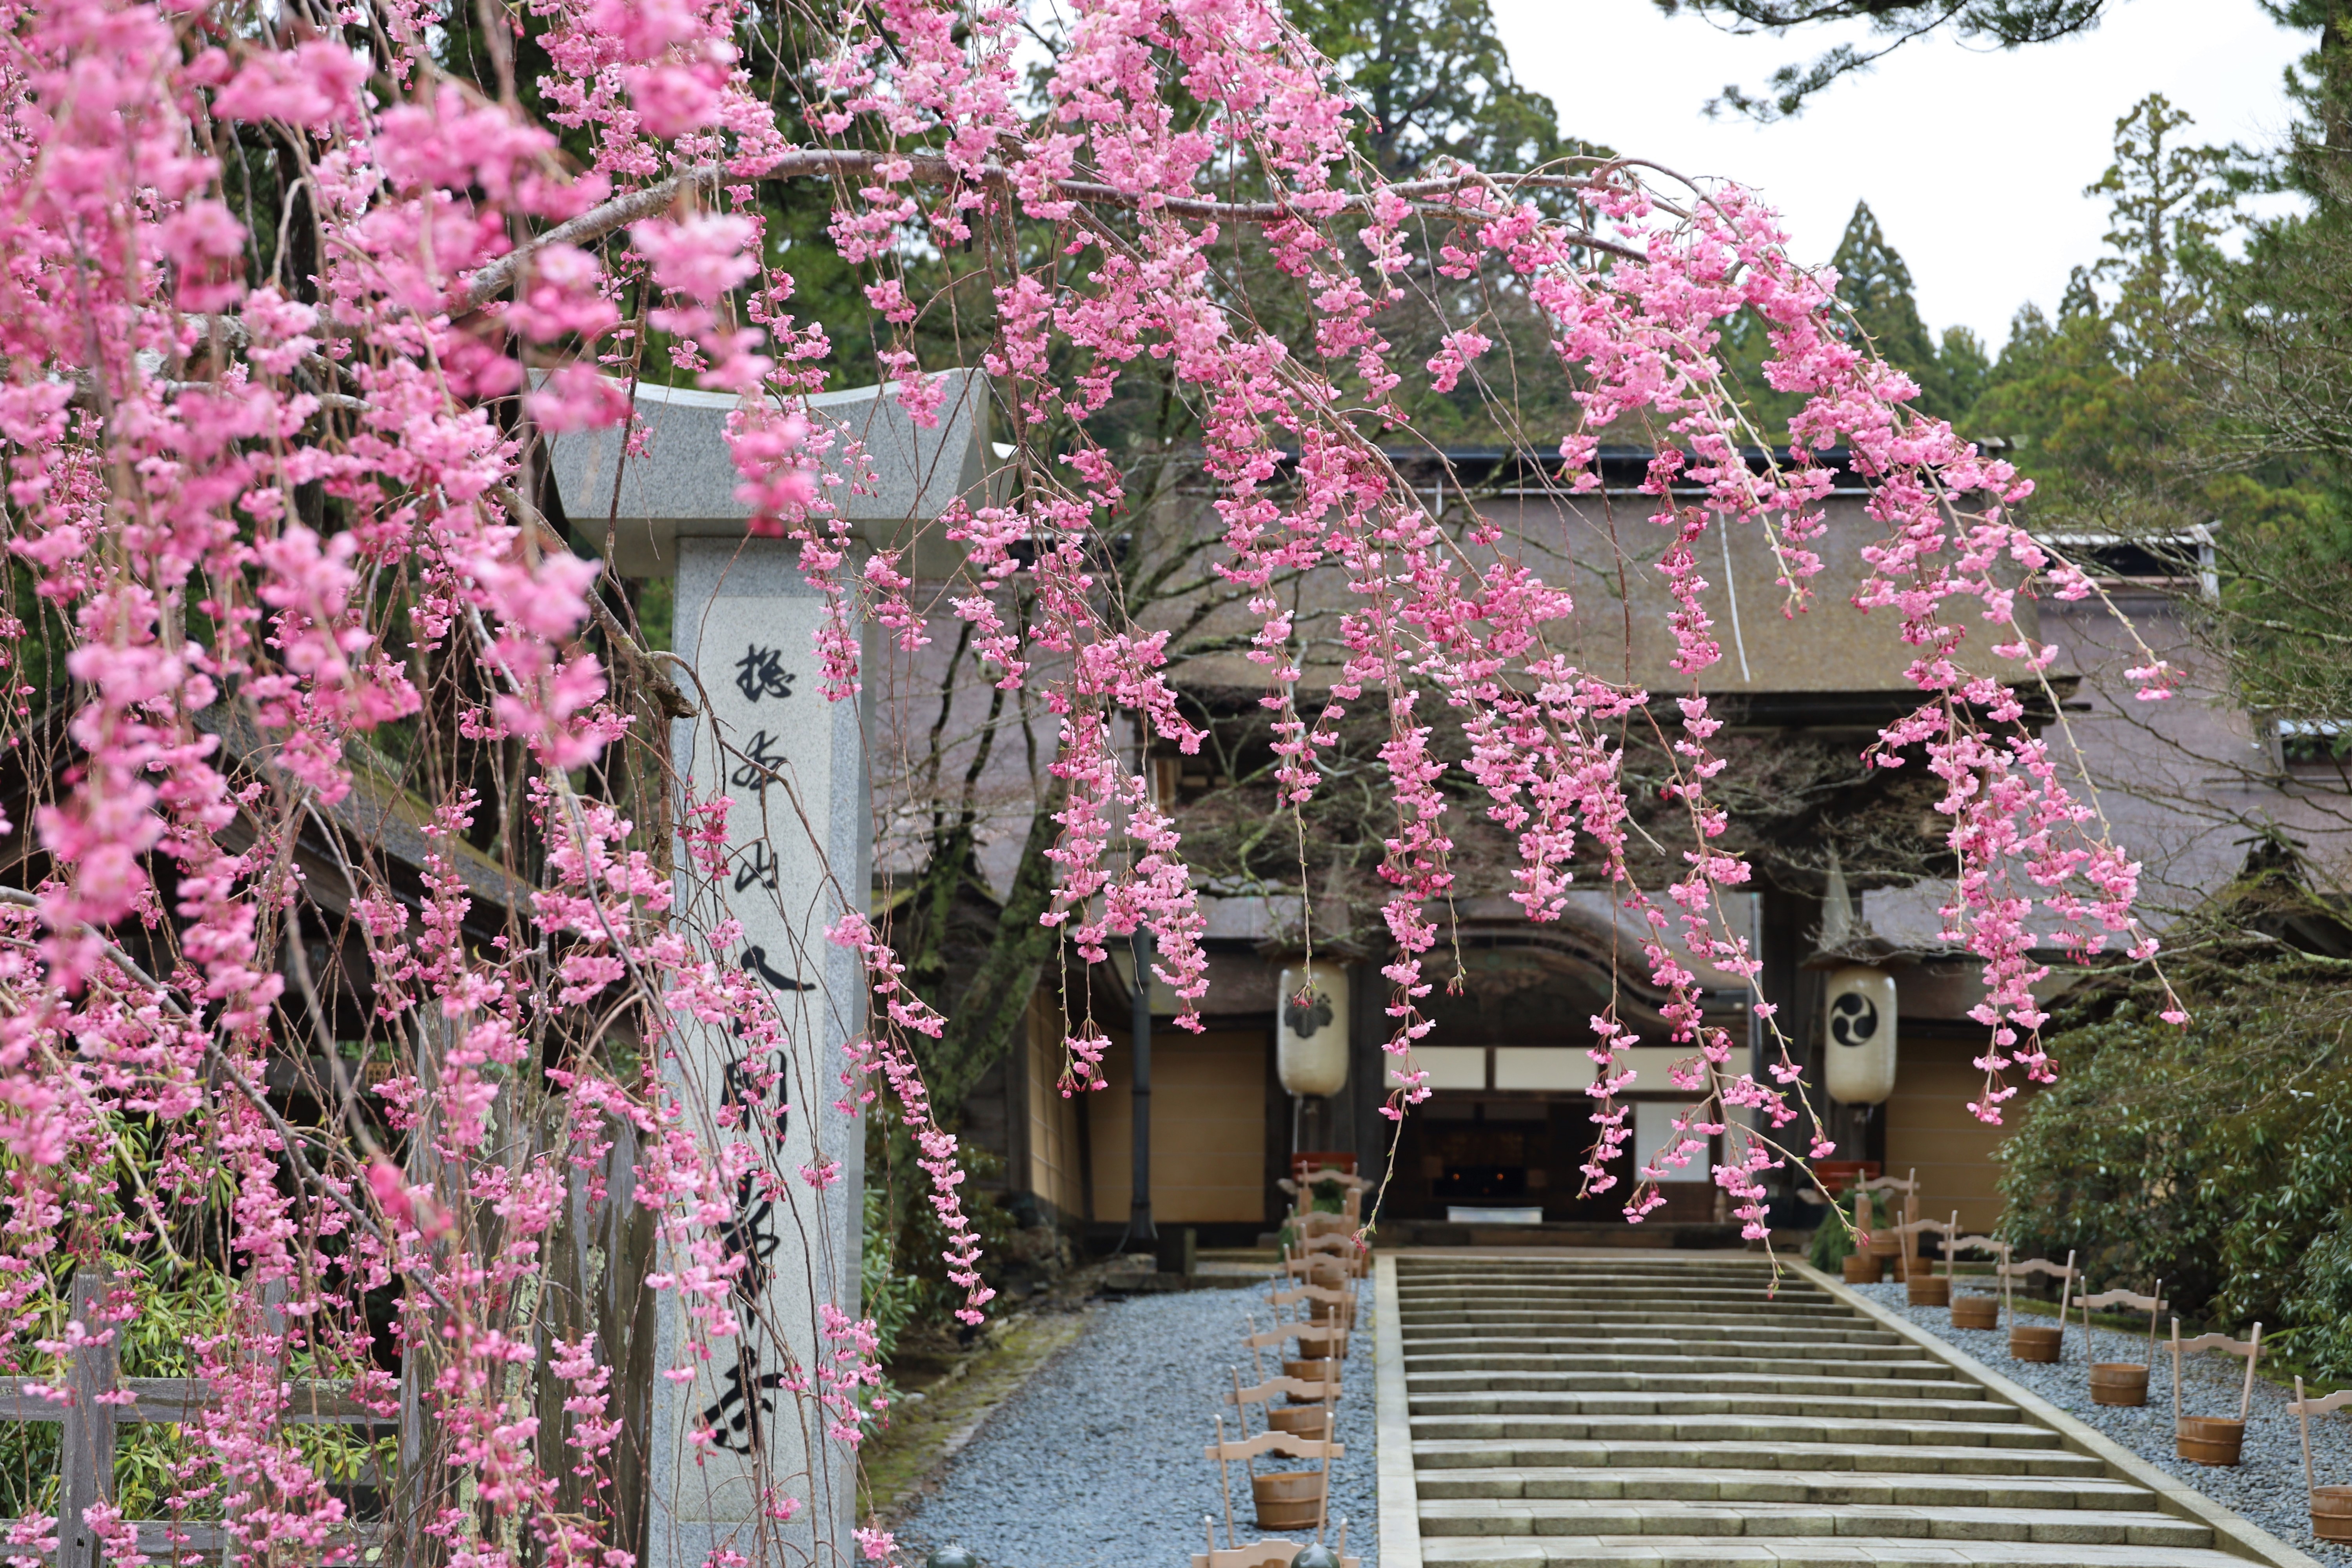 【ซากุระ x มรดกโลก】วัดโคยะซังคงโกบุจิ เพลิดเพลินกับการชมดอกซากุระ ณ สถานที่อายุ 1200 ปี (จังหวัดวาคายามะ)